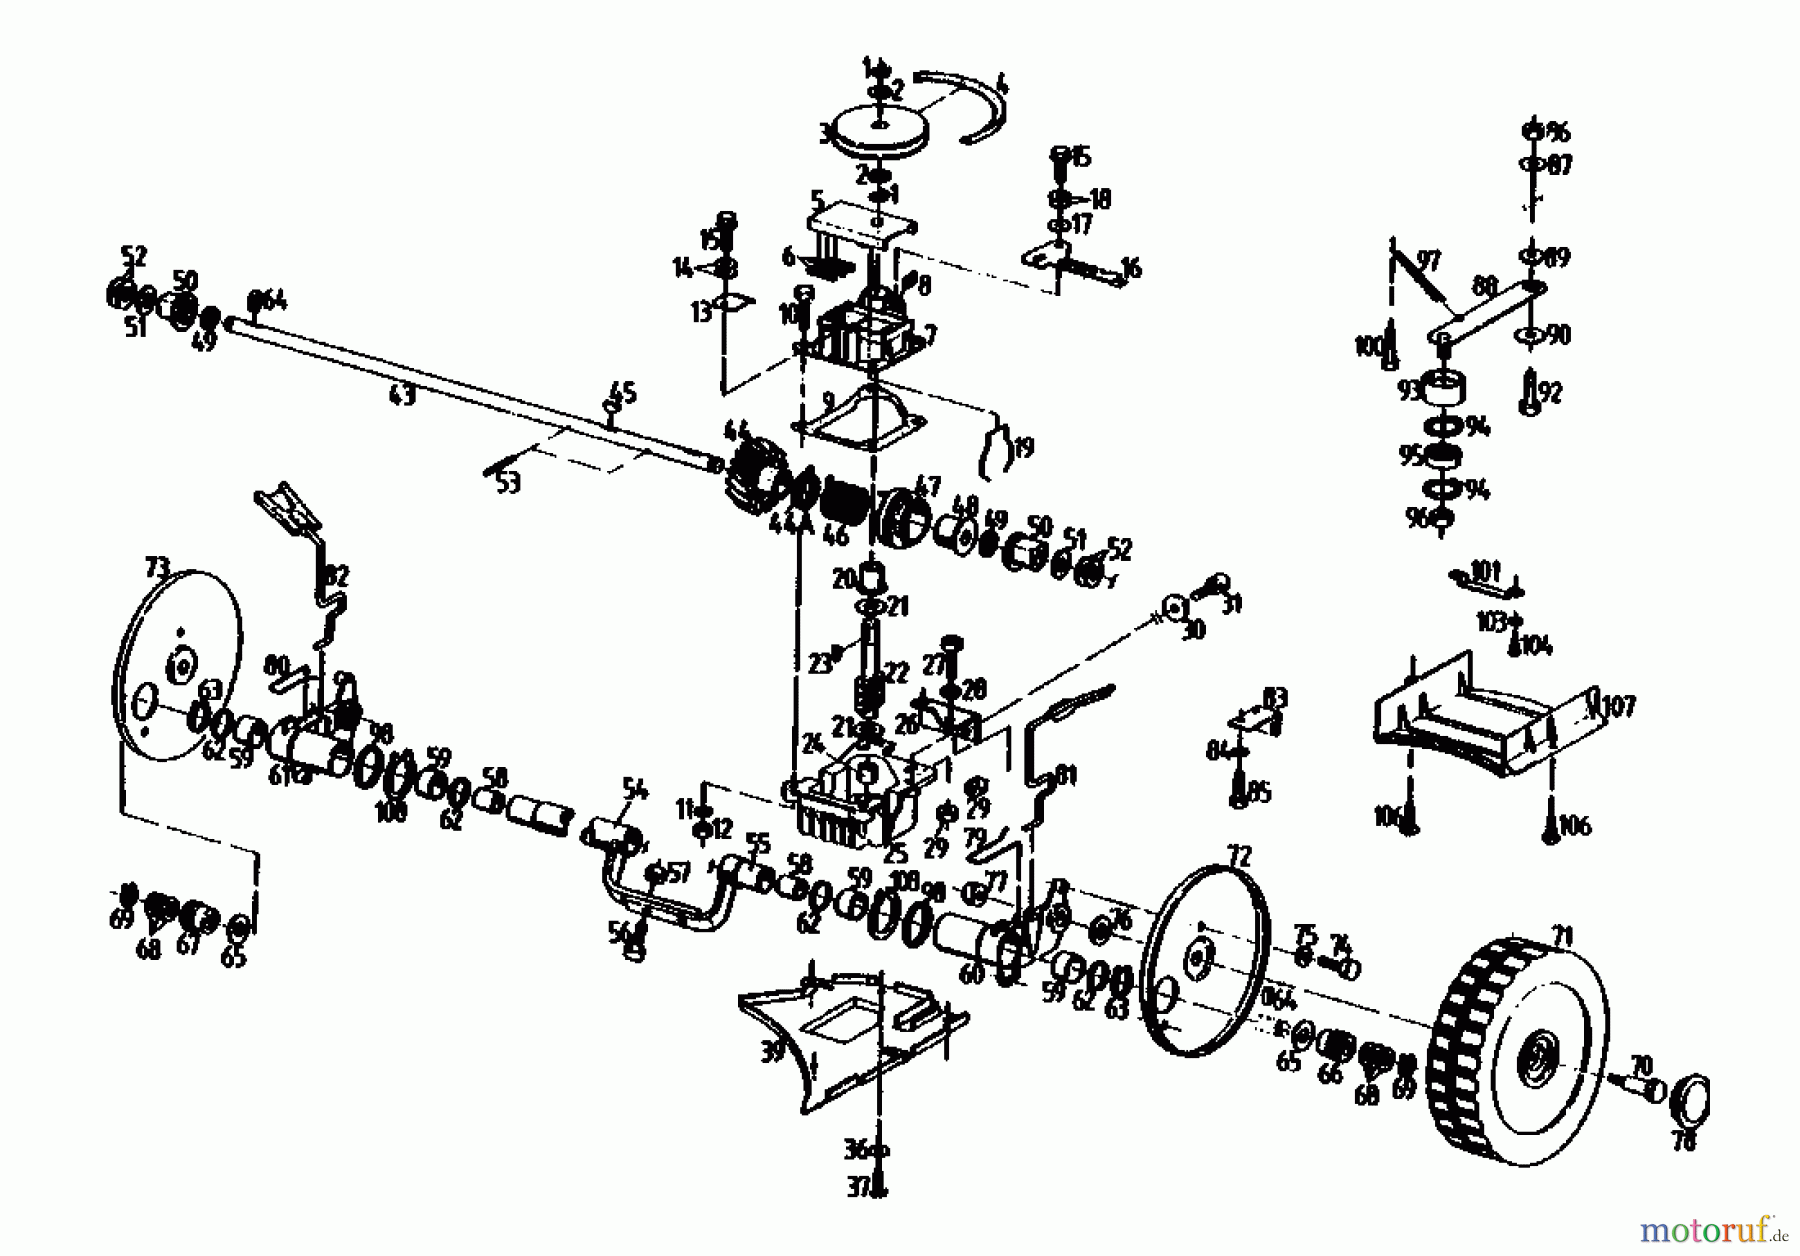  Gutbrod Motormäher mit Antrieb HB 47 R-4 BS 04001.01  (1990) Getriebe